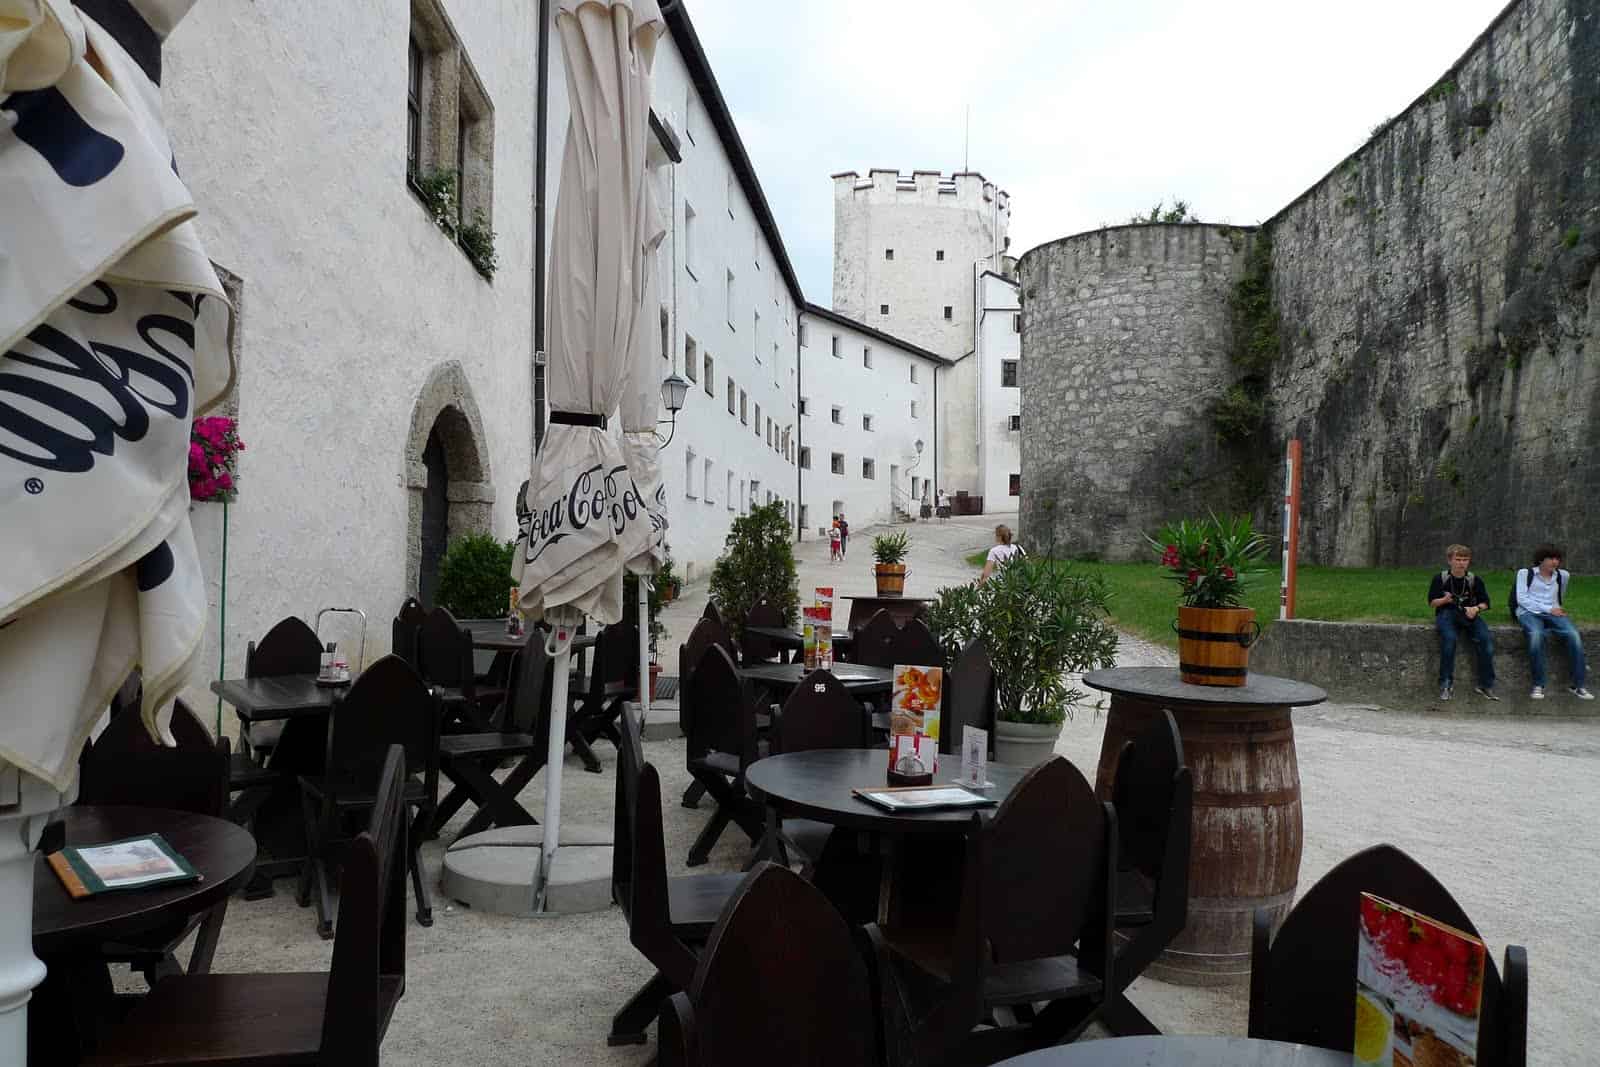 افضل 6 أنشطة في قلعة هوهن سالزبورغ النمسا